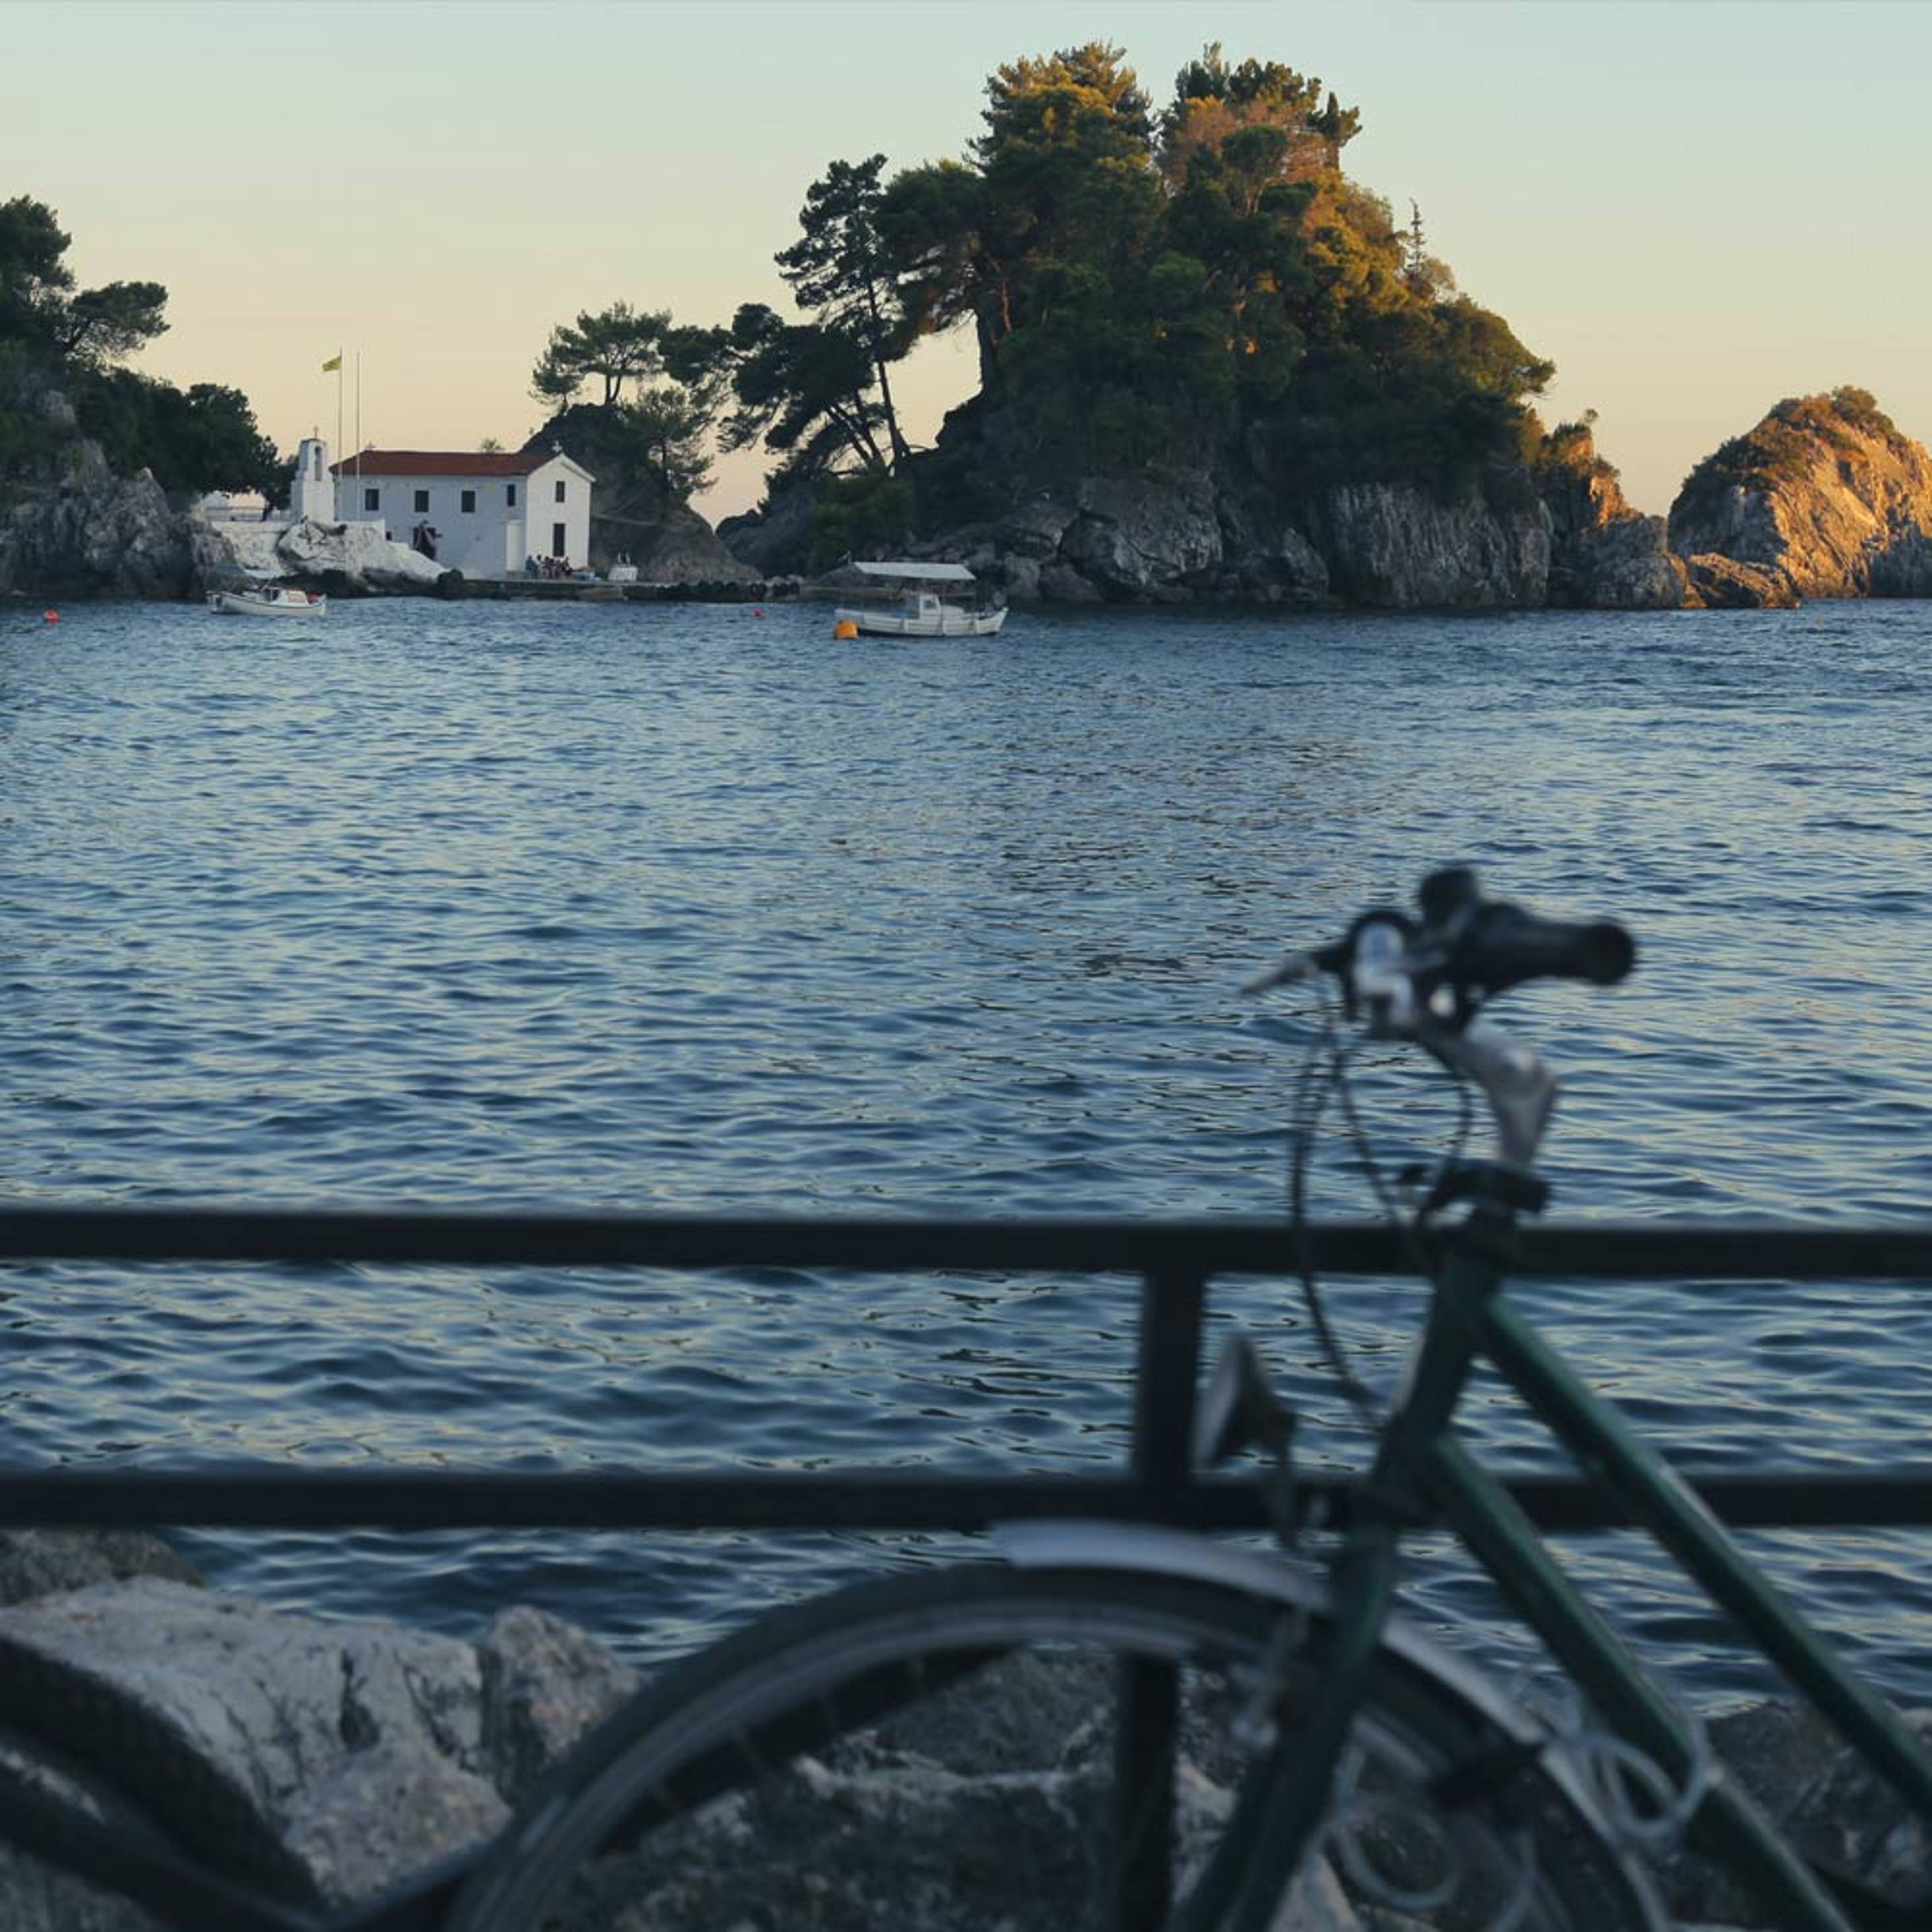 Votre voyage Vélo en Grèce à la demande